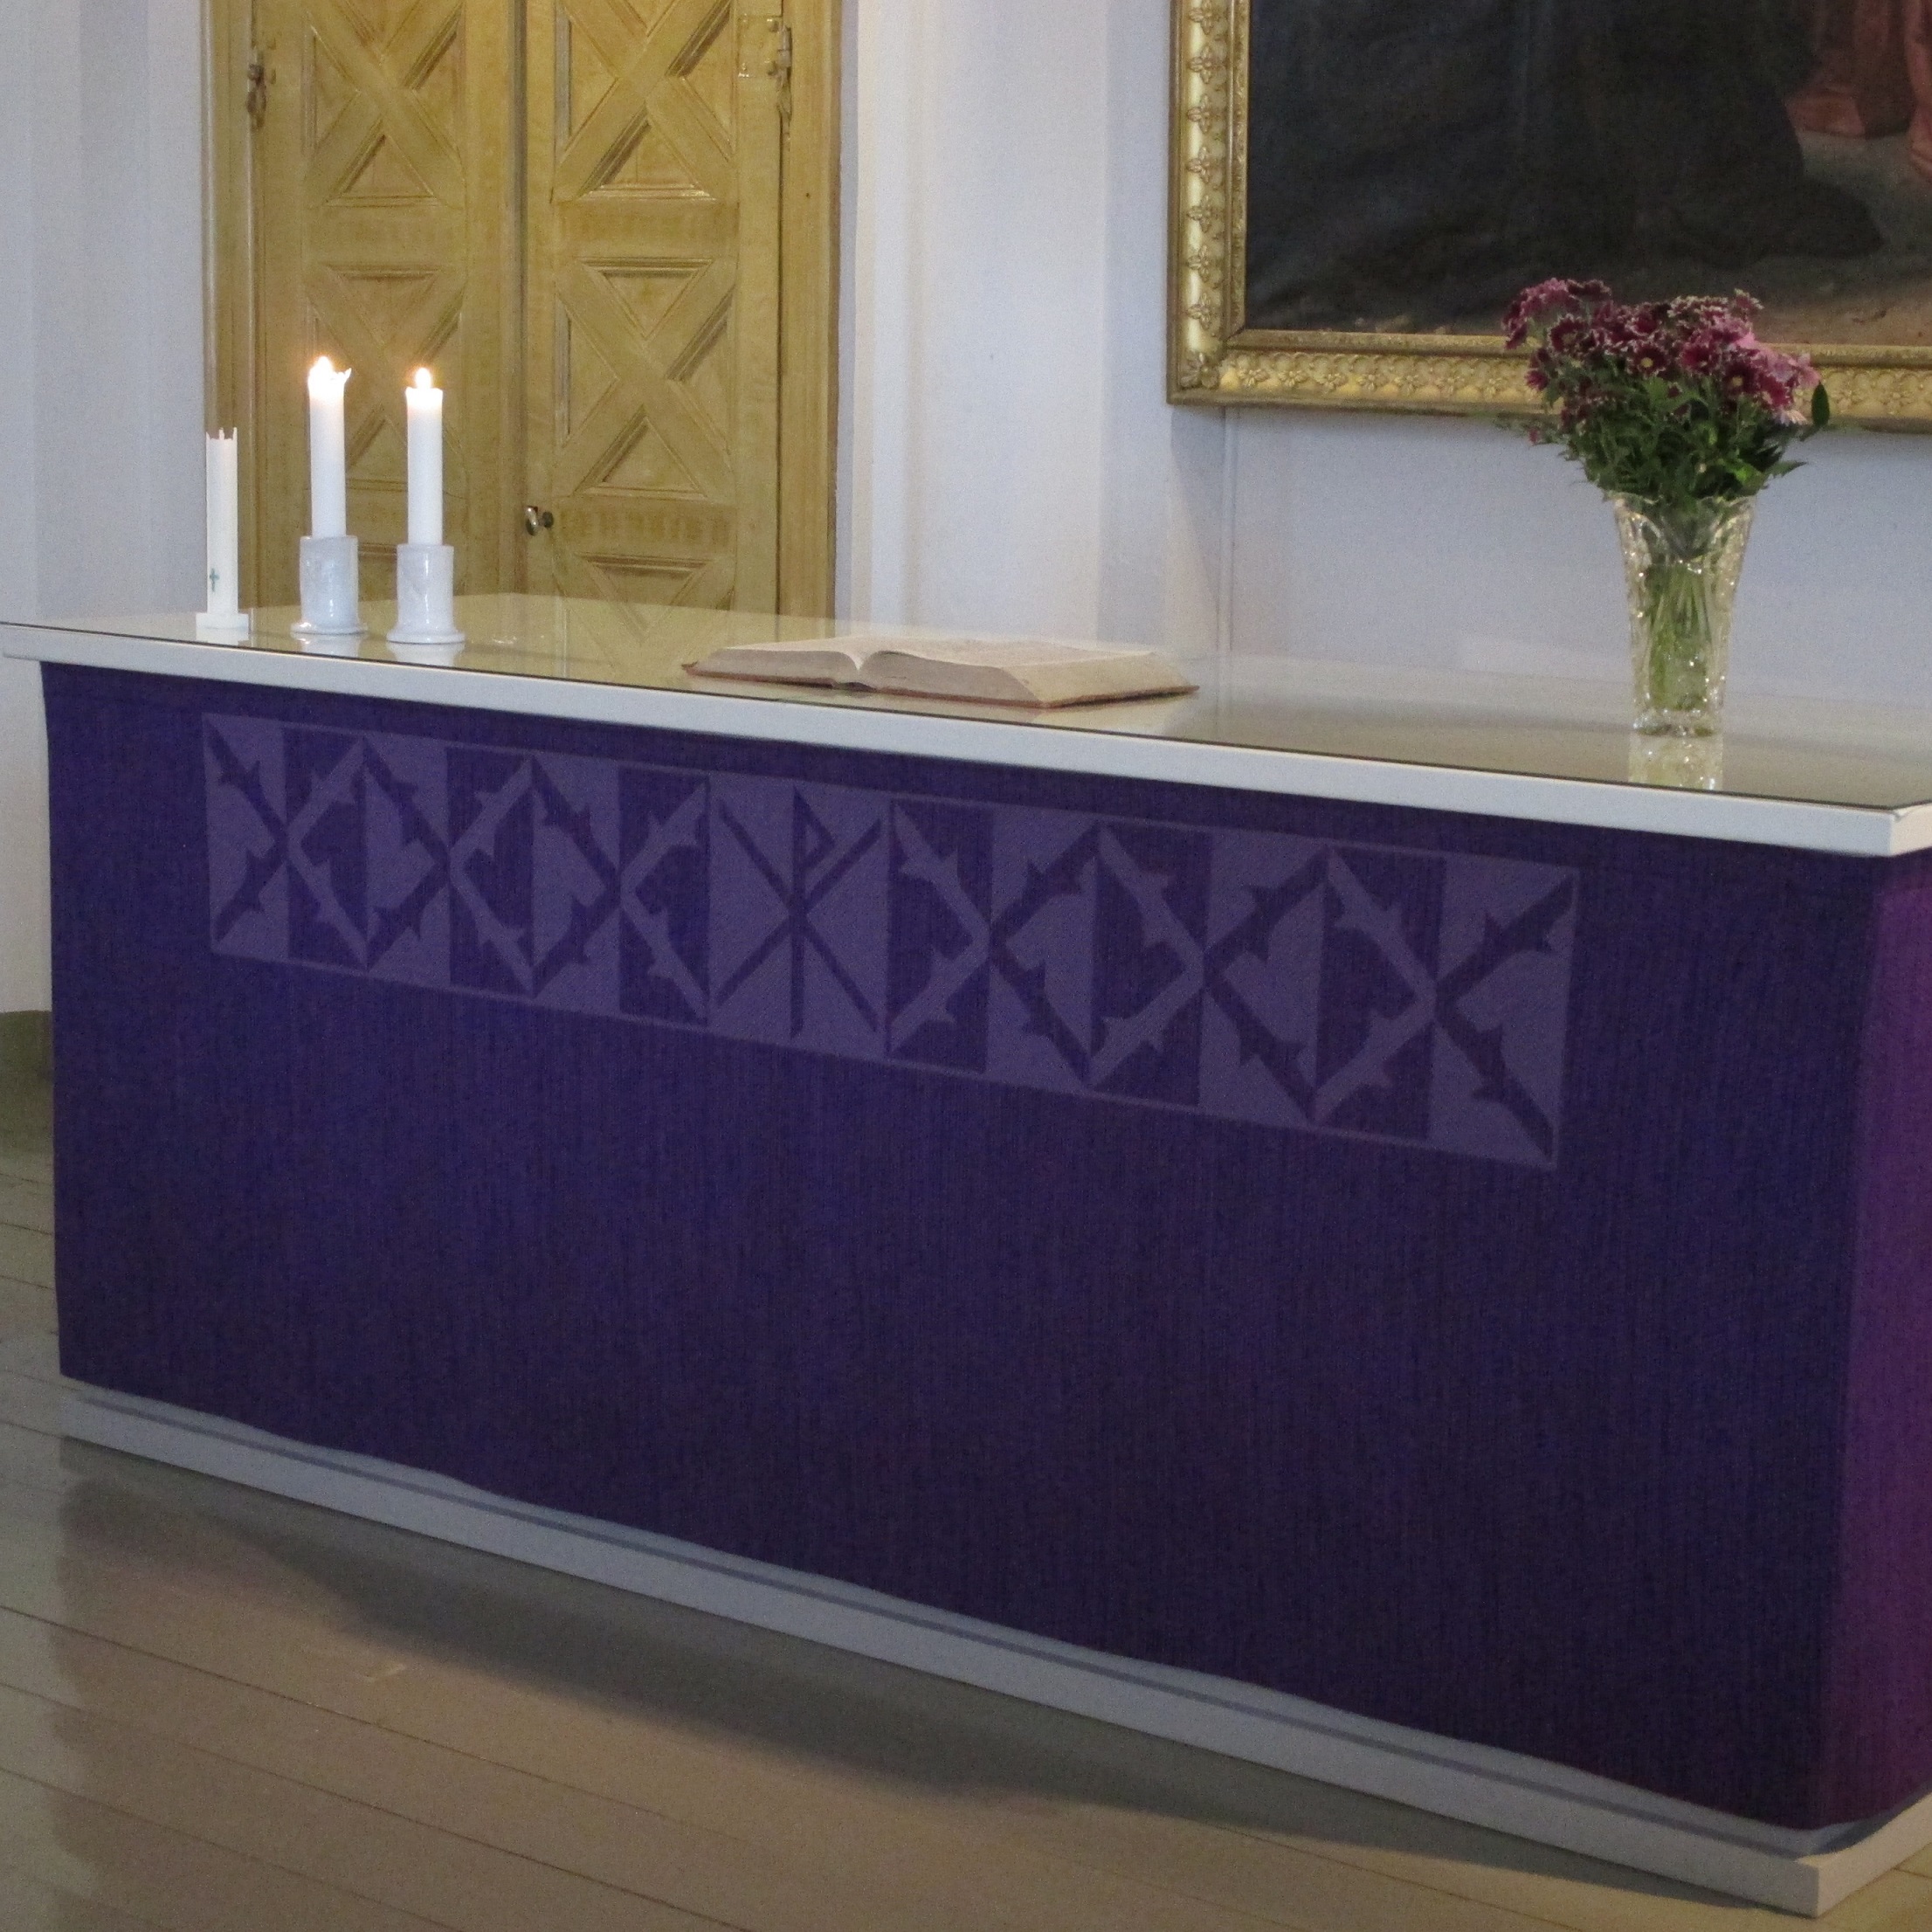 kirkon alttaripöytä, pöydällä kukkia ja kynttilöitä, edessä violetti kangas